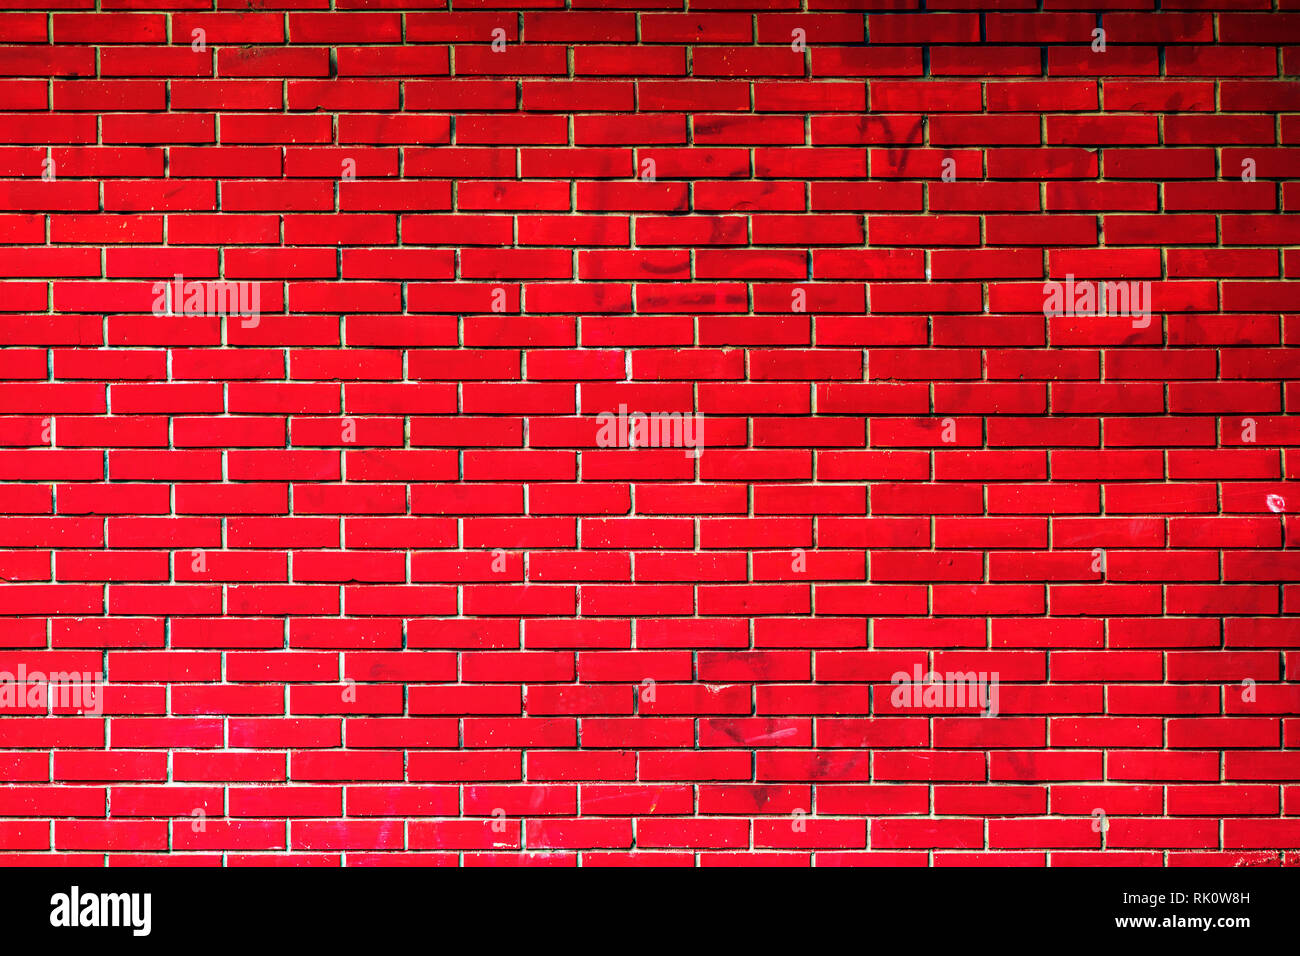 Grunge muro de ladrillo rojo de fondo, construcción de fachada exterior Foto de stock